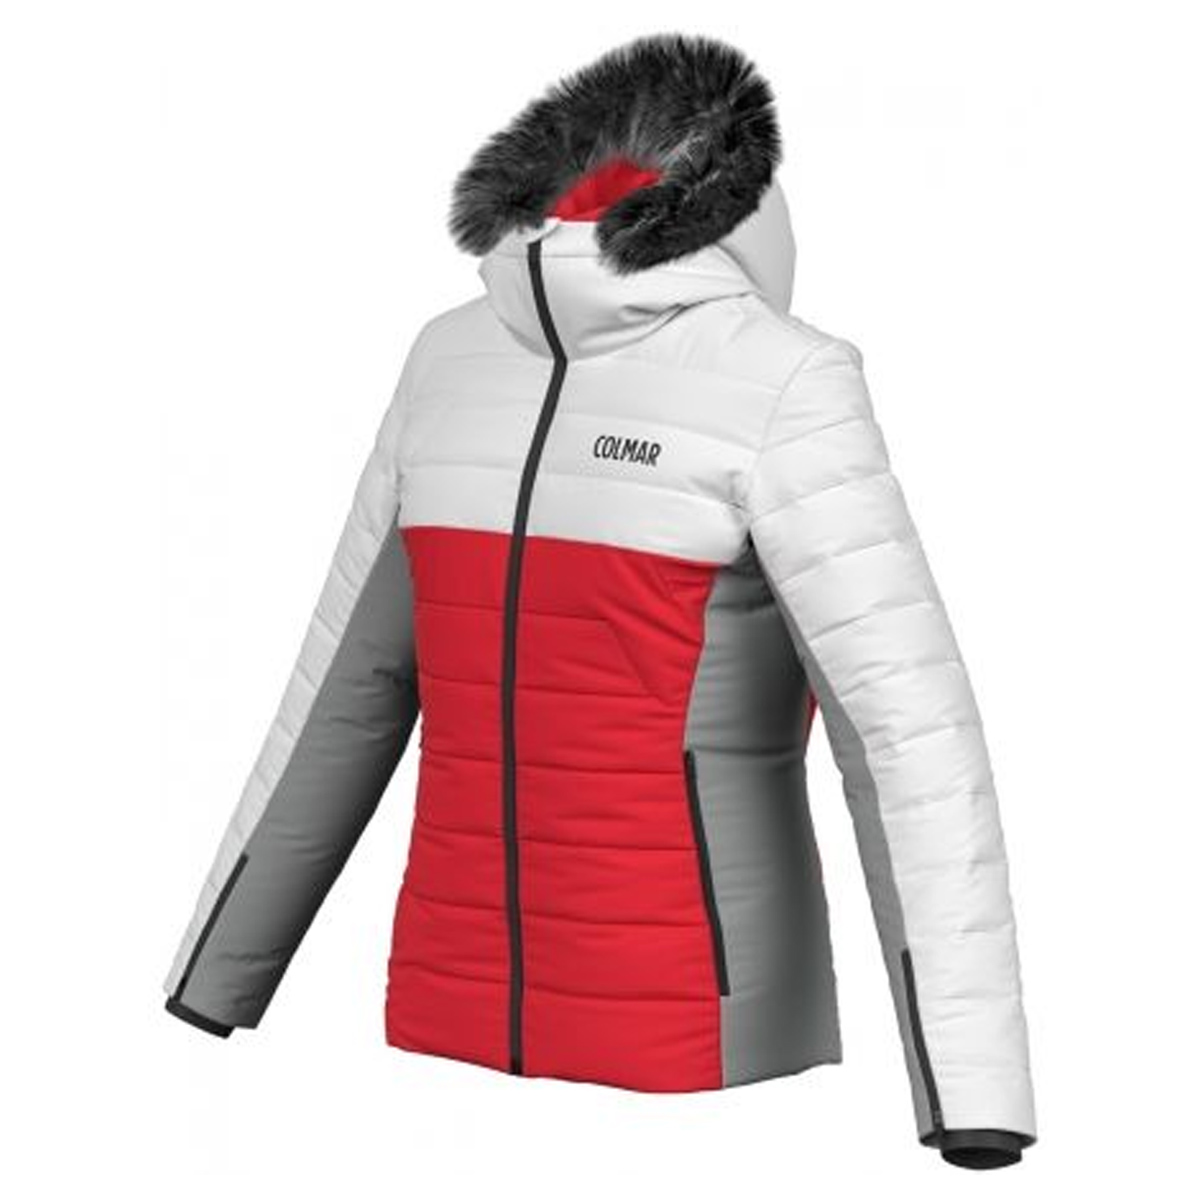 Ski jacket Colmar Lake Woman - Bottero Ski | EN